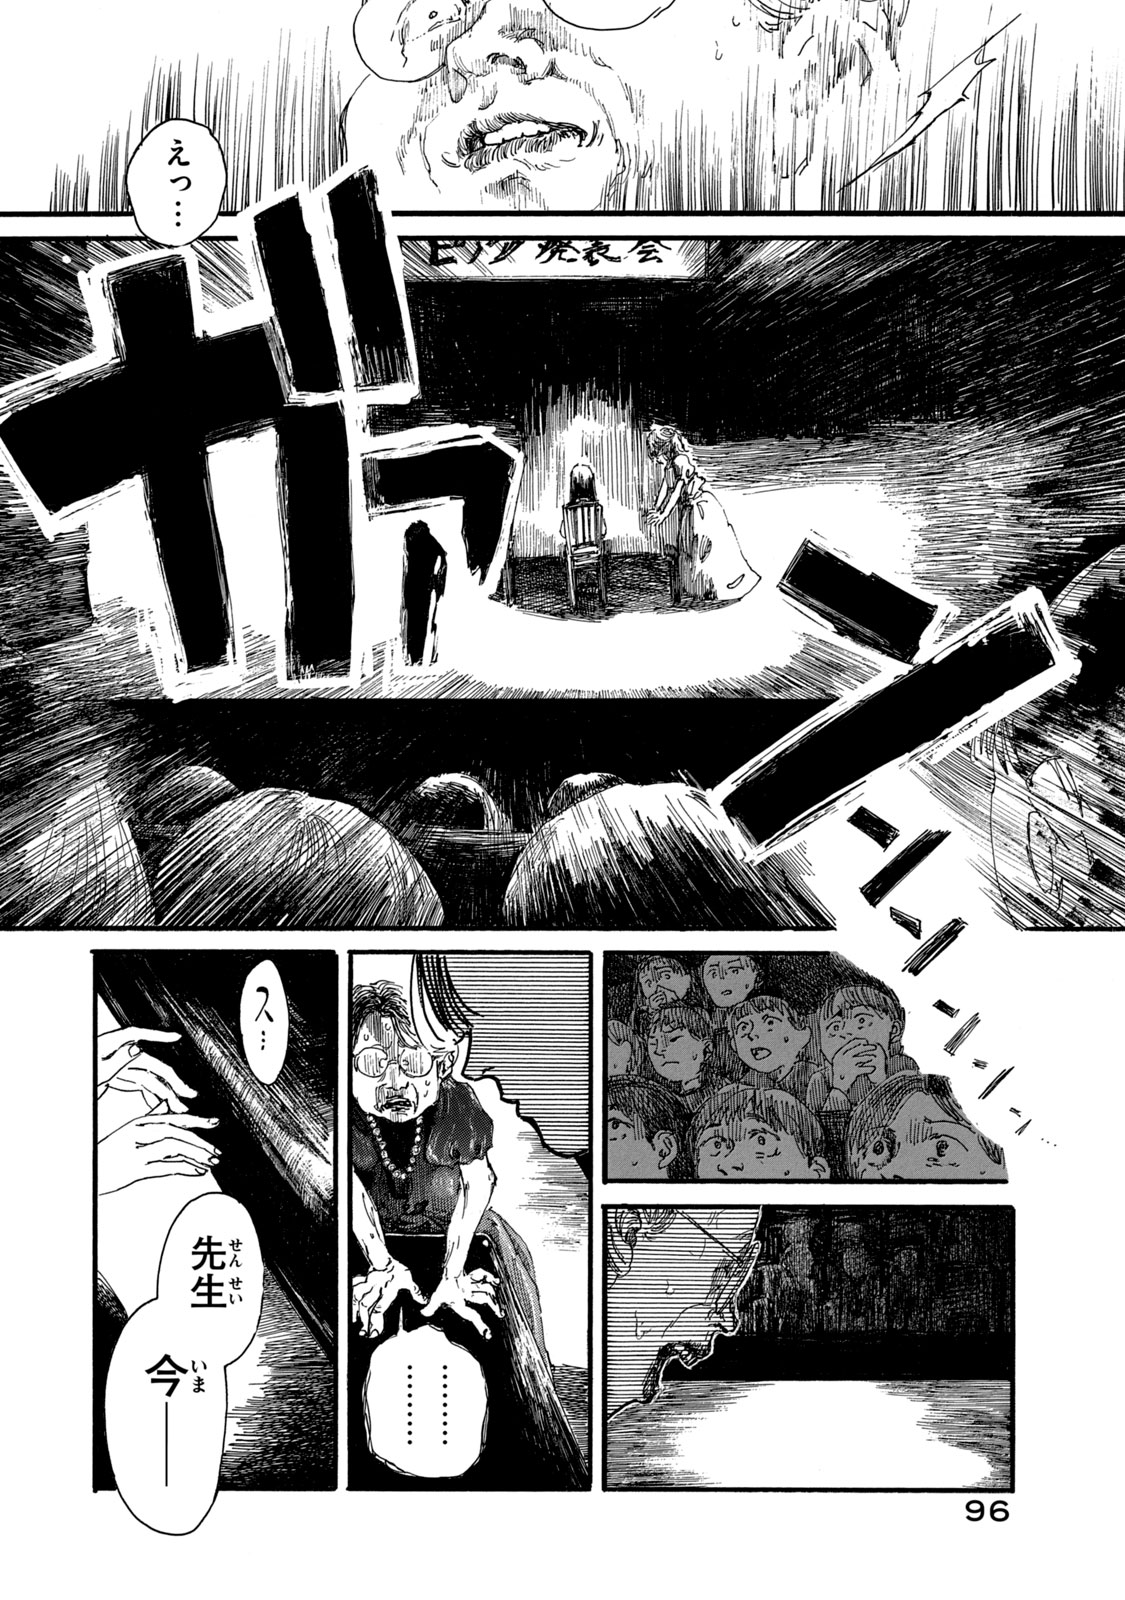 Watashi no Hara no Naka no Bakemono - Chapter 13 - Page 1